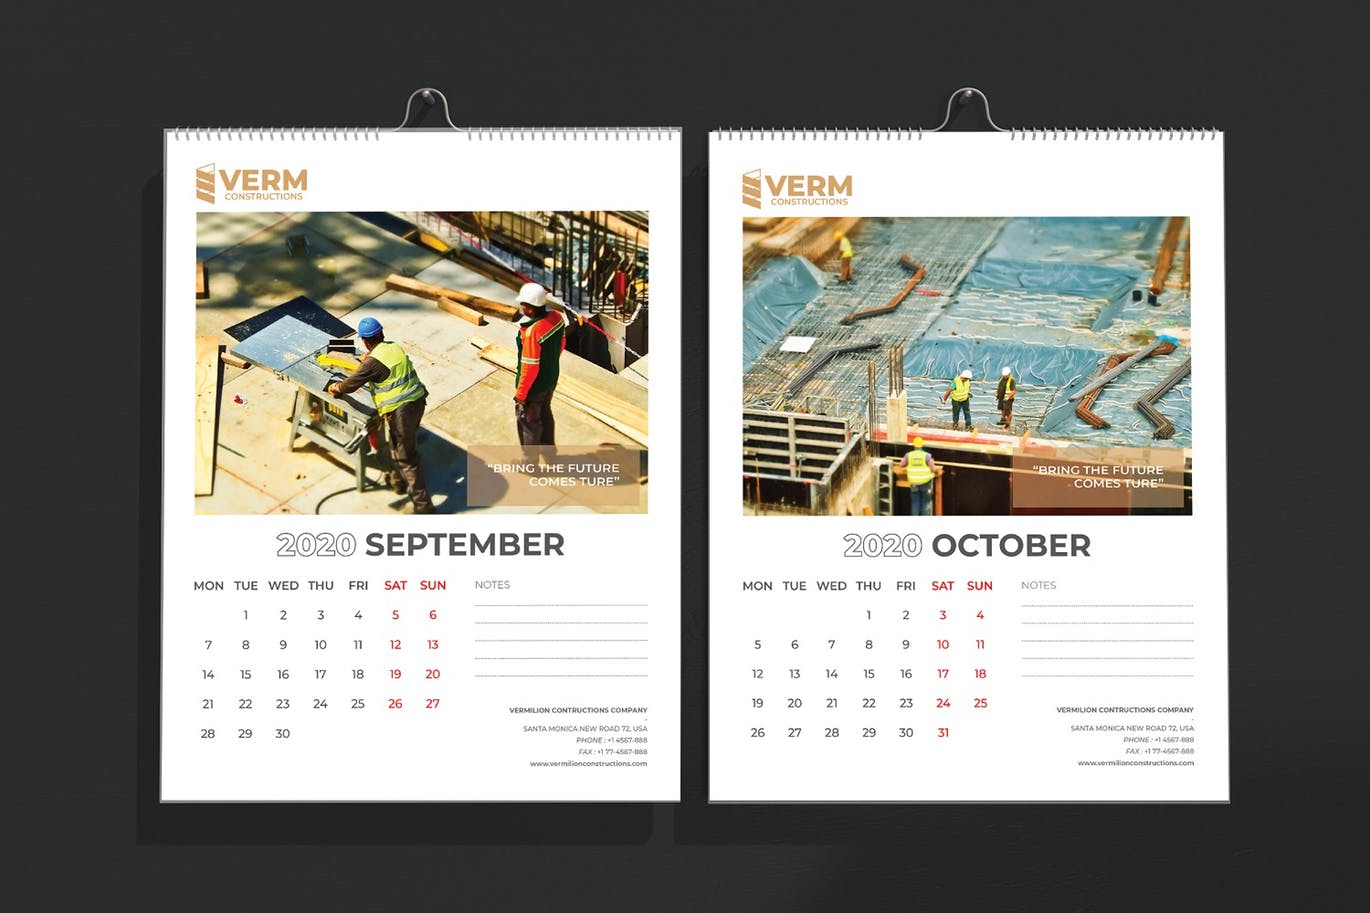 2020年建筑主题台历&挂墙日历表设计模板 Construction Wall & Table Calendar 2020插图(7)